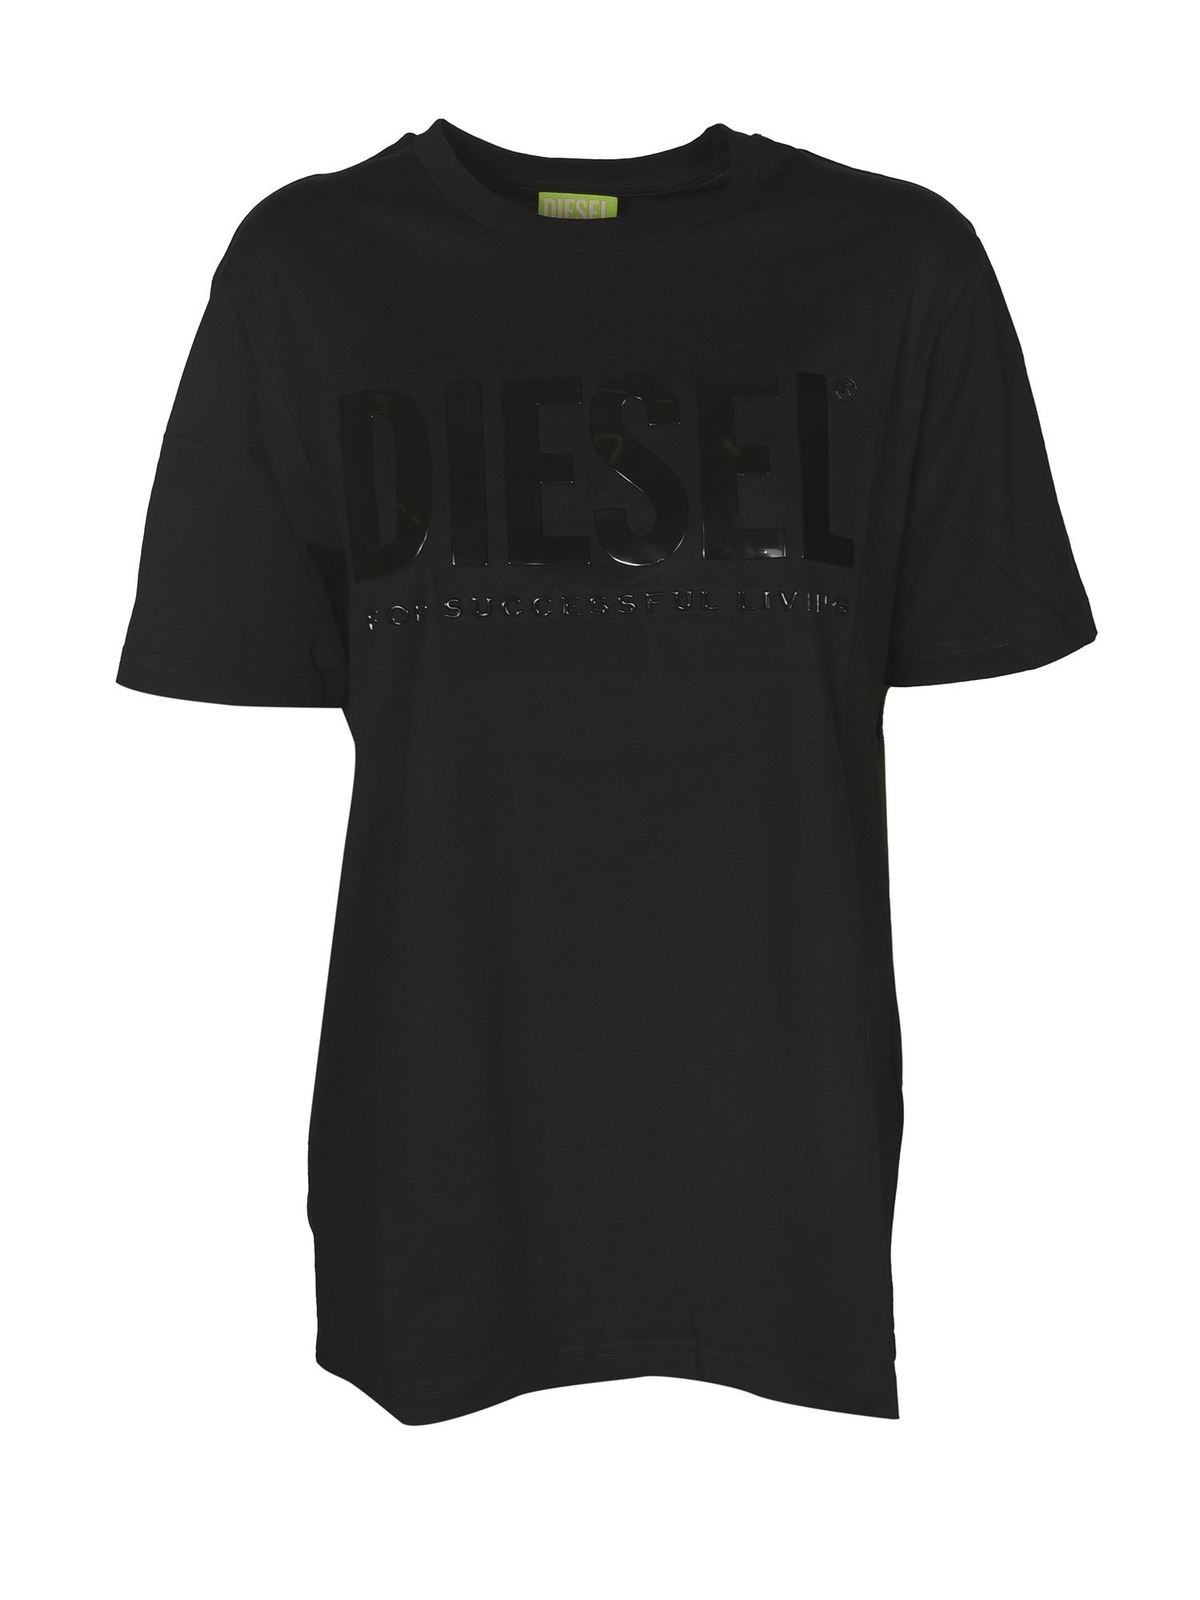 Diesel JUST T-SHIRT IN BLACK